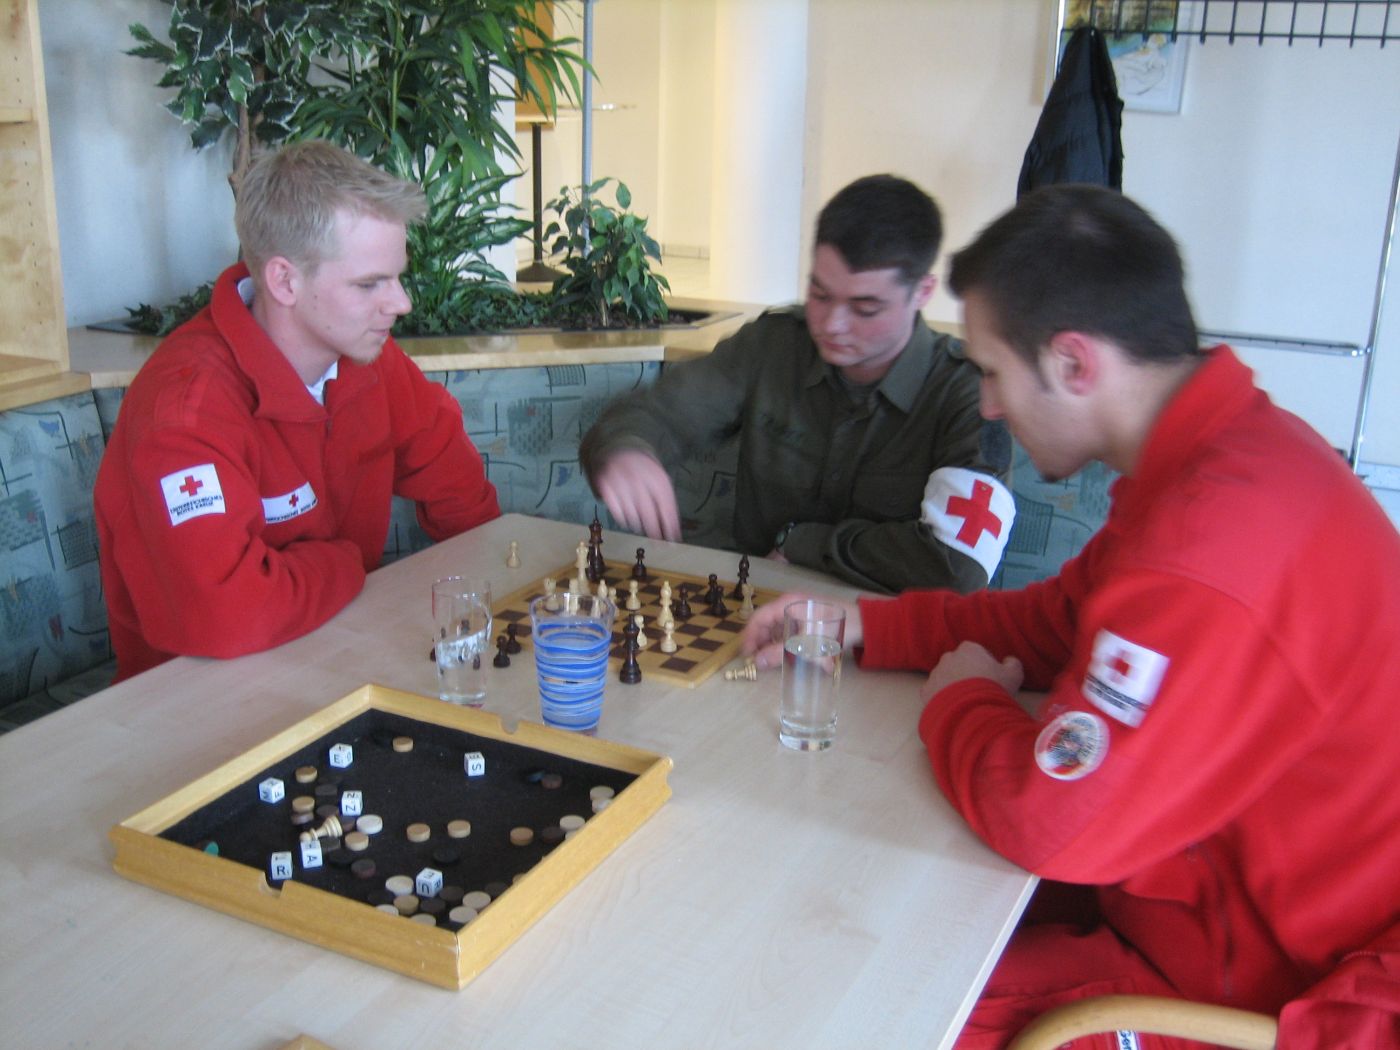 Zwei Zivildiener in Uniform des Österreichischen Roten Kreuzes und ein Grundwehrdiener in Uniform sitzen an einem Tisch und spielen Schach